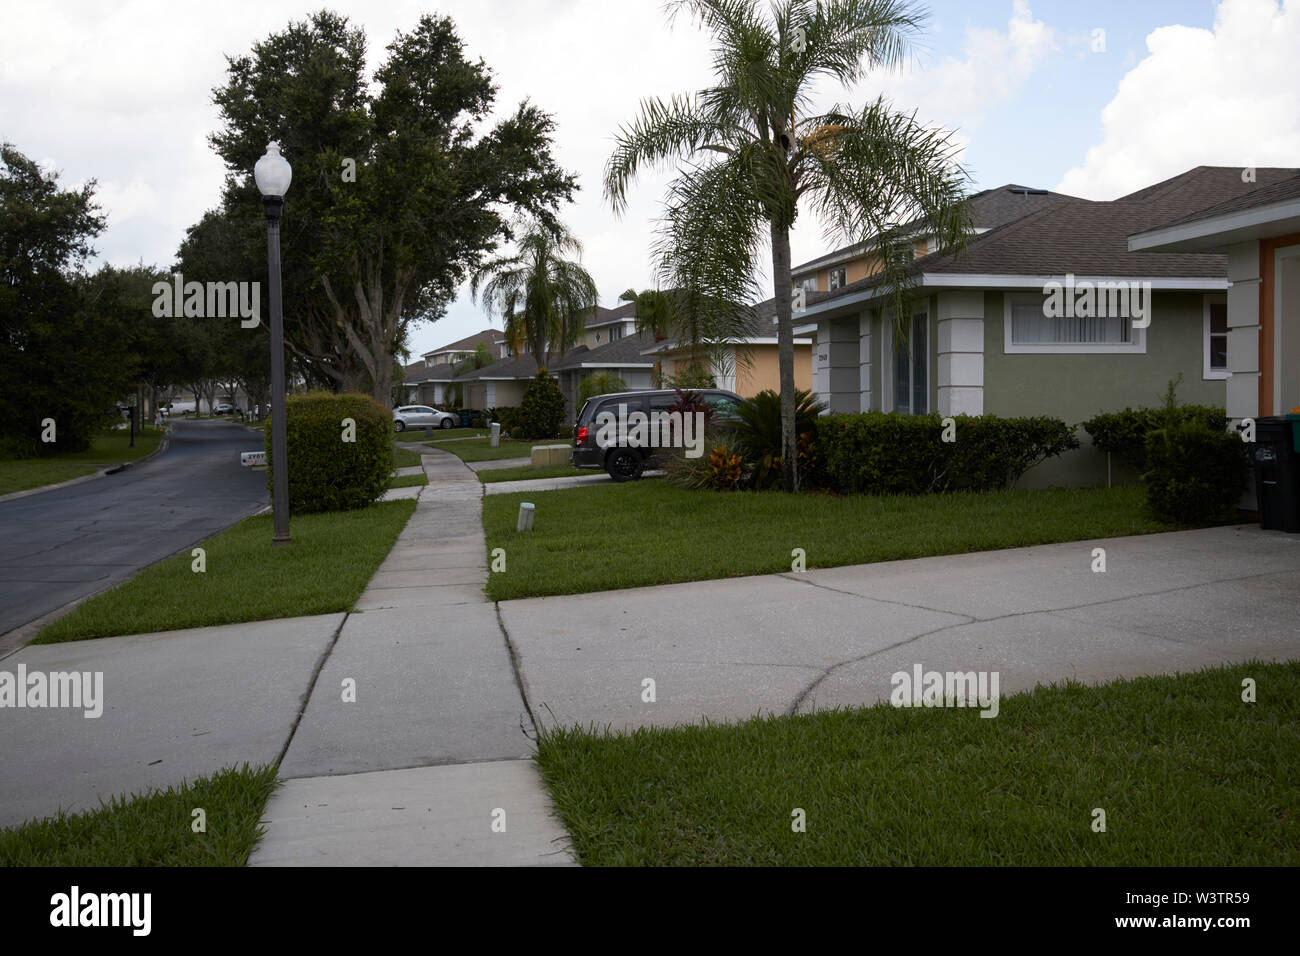 Fußweg Bürgersteig durch gated community und konkrete Einfahrt in Kissimmee während bedeckt stürmischer Sommertag Florida USA Vereinigte Staaten von Amerika Stockfoto